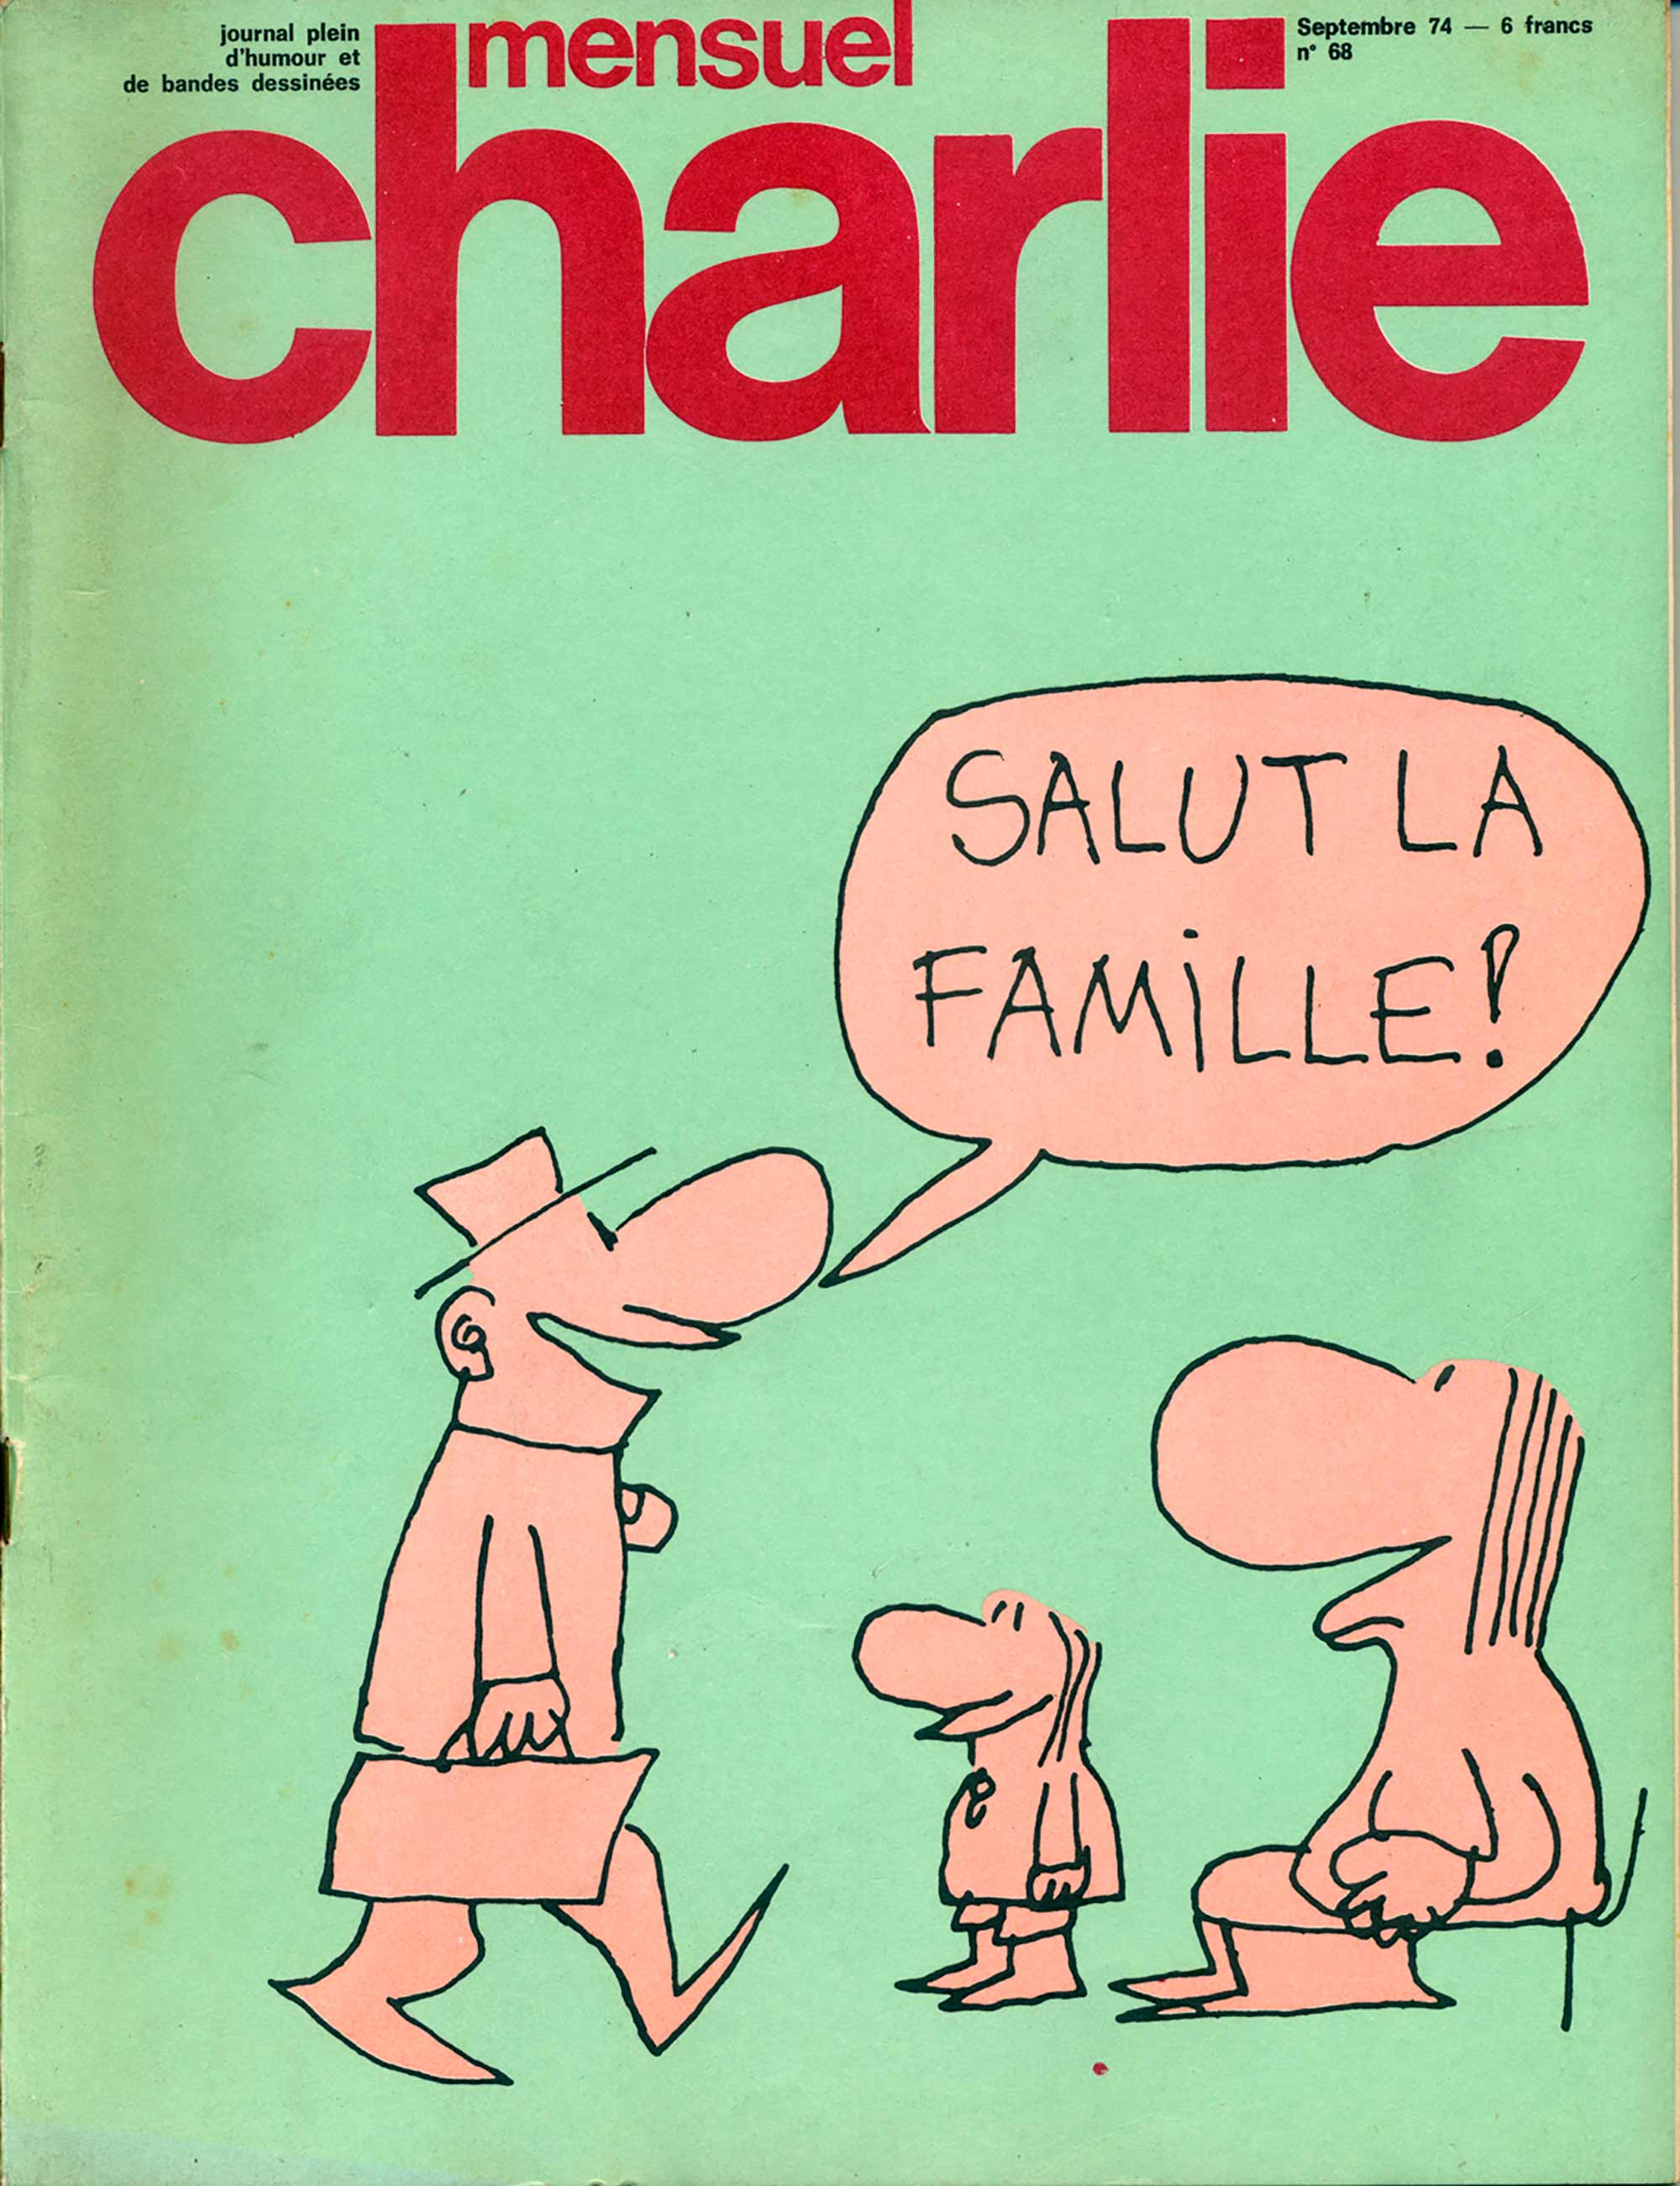 Mensuel Charlie magazine, no. 68, September 1974 